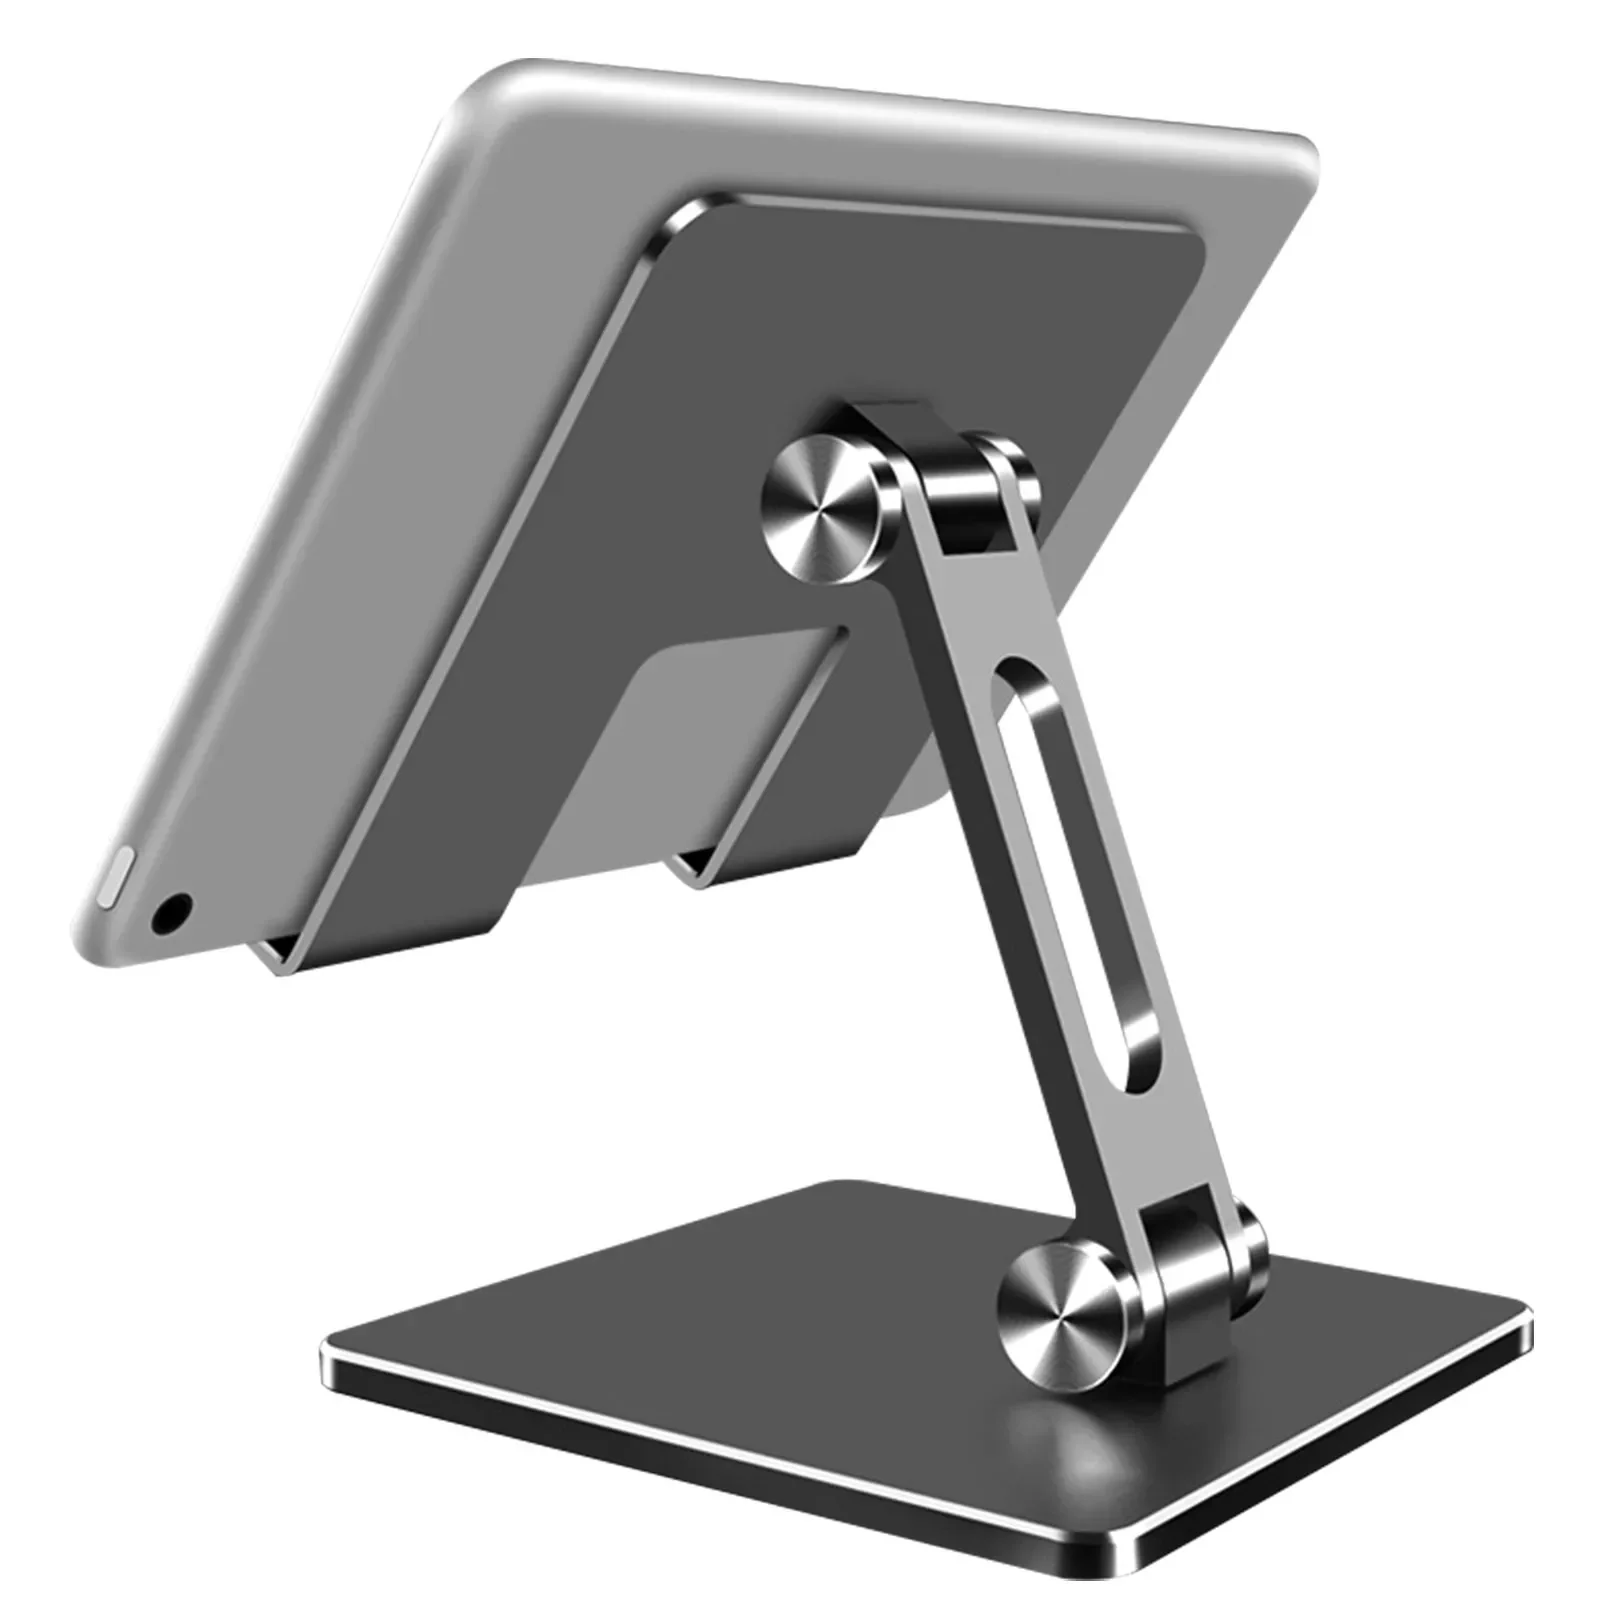 Tablet Holder Cell Phone Stand 180 Adjustable Aluminum Smart Phone Cradle Dock Holder Portable Phone Holder Office Desk